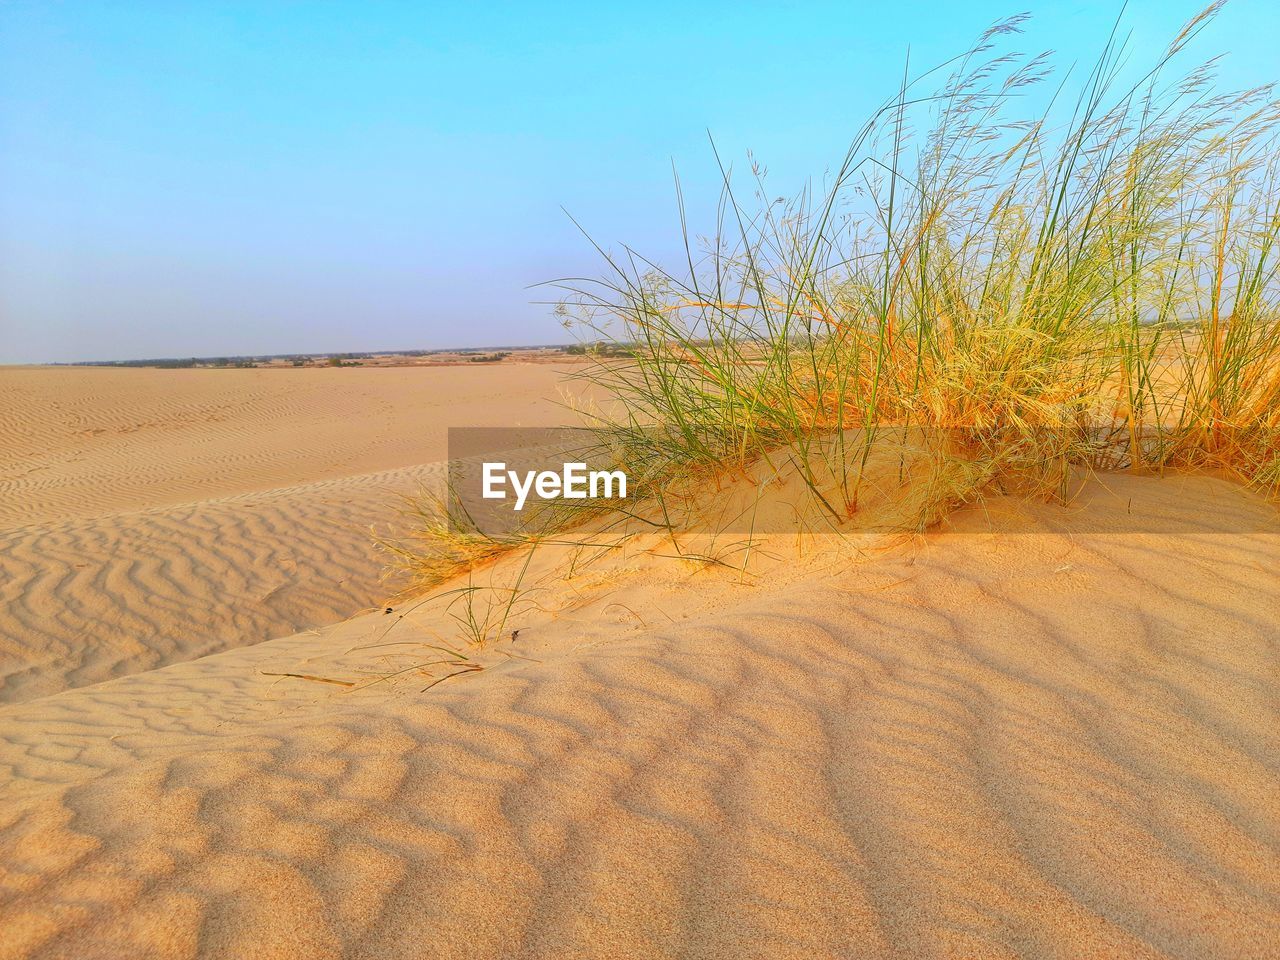 Plants and sand dunes on algeria desert